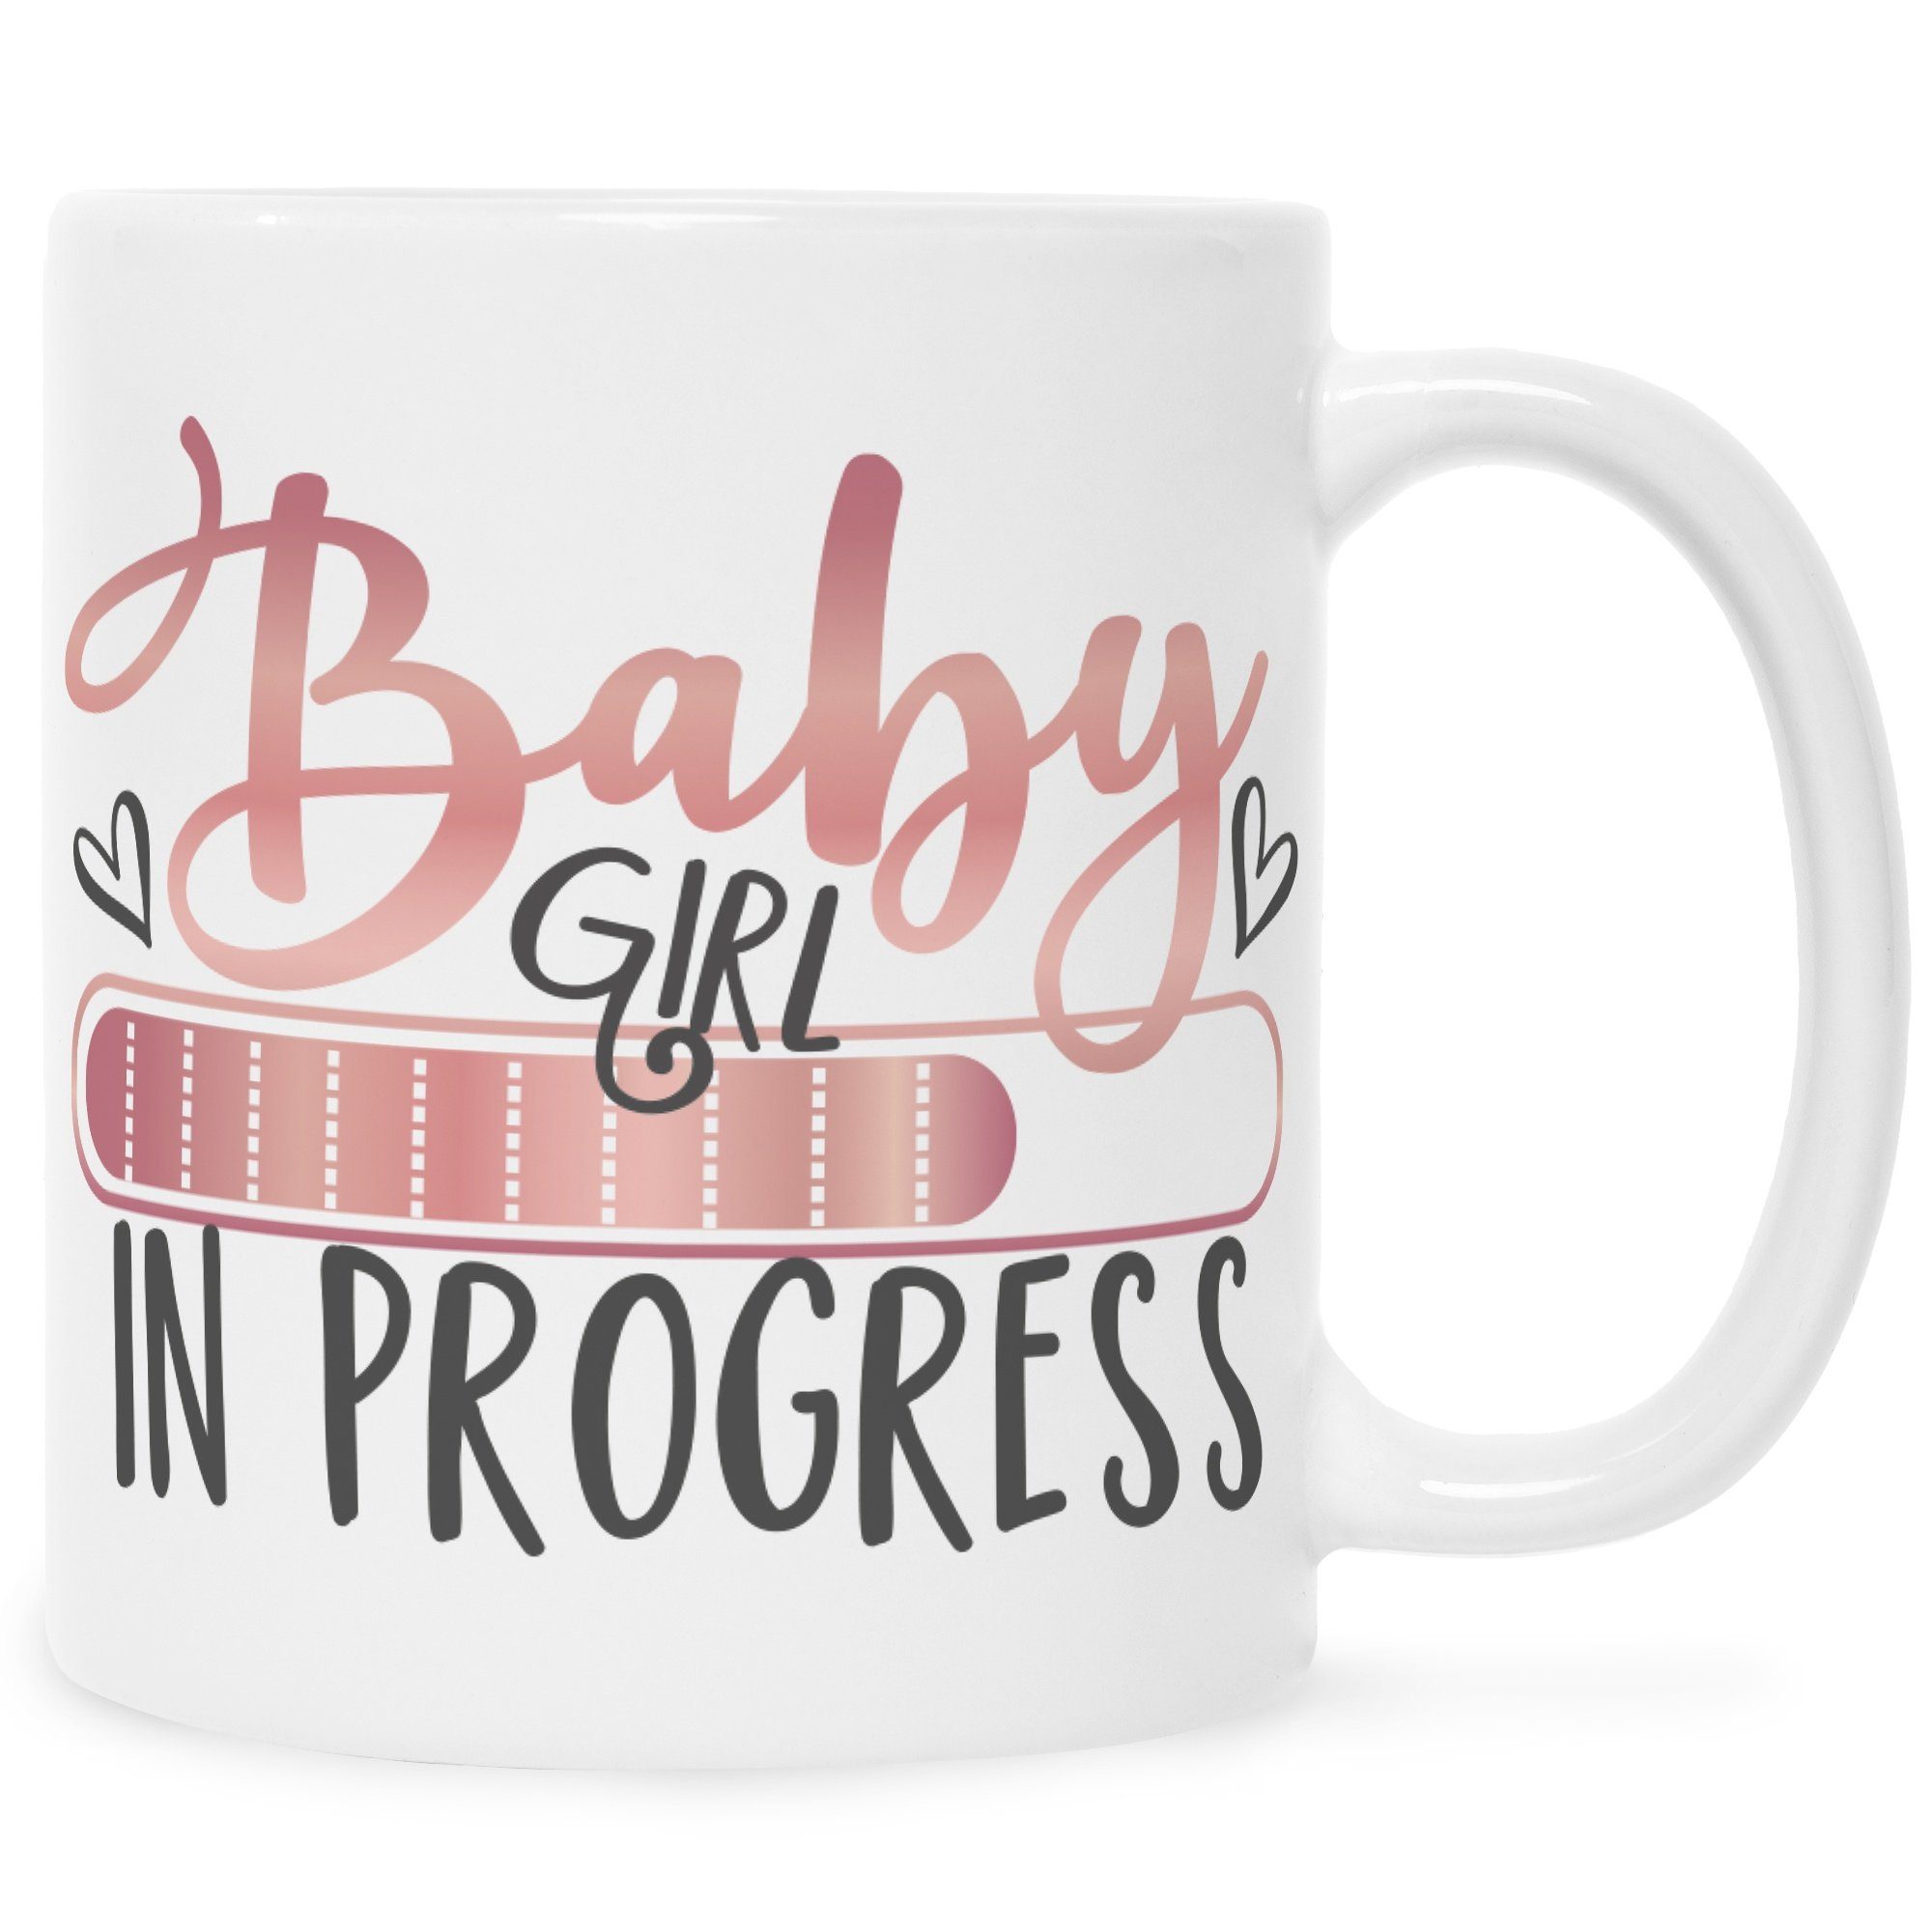 GRAVURZEILE Tasse Bedruckte Tasse mit Spruch - Baby in Progress, Keramik, Witziges Design zur Schwangerschaftsankündigung Girl Weiß